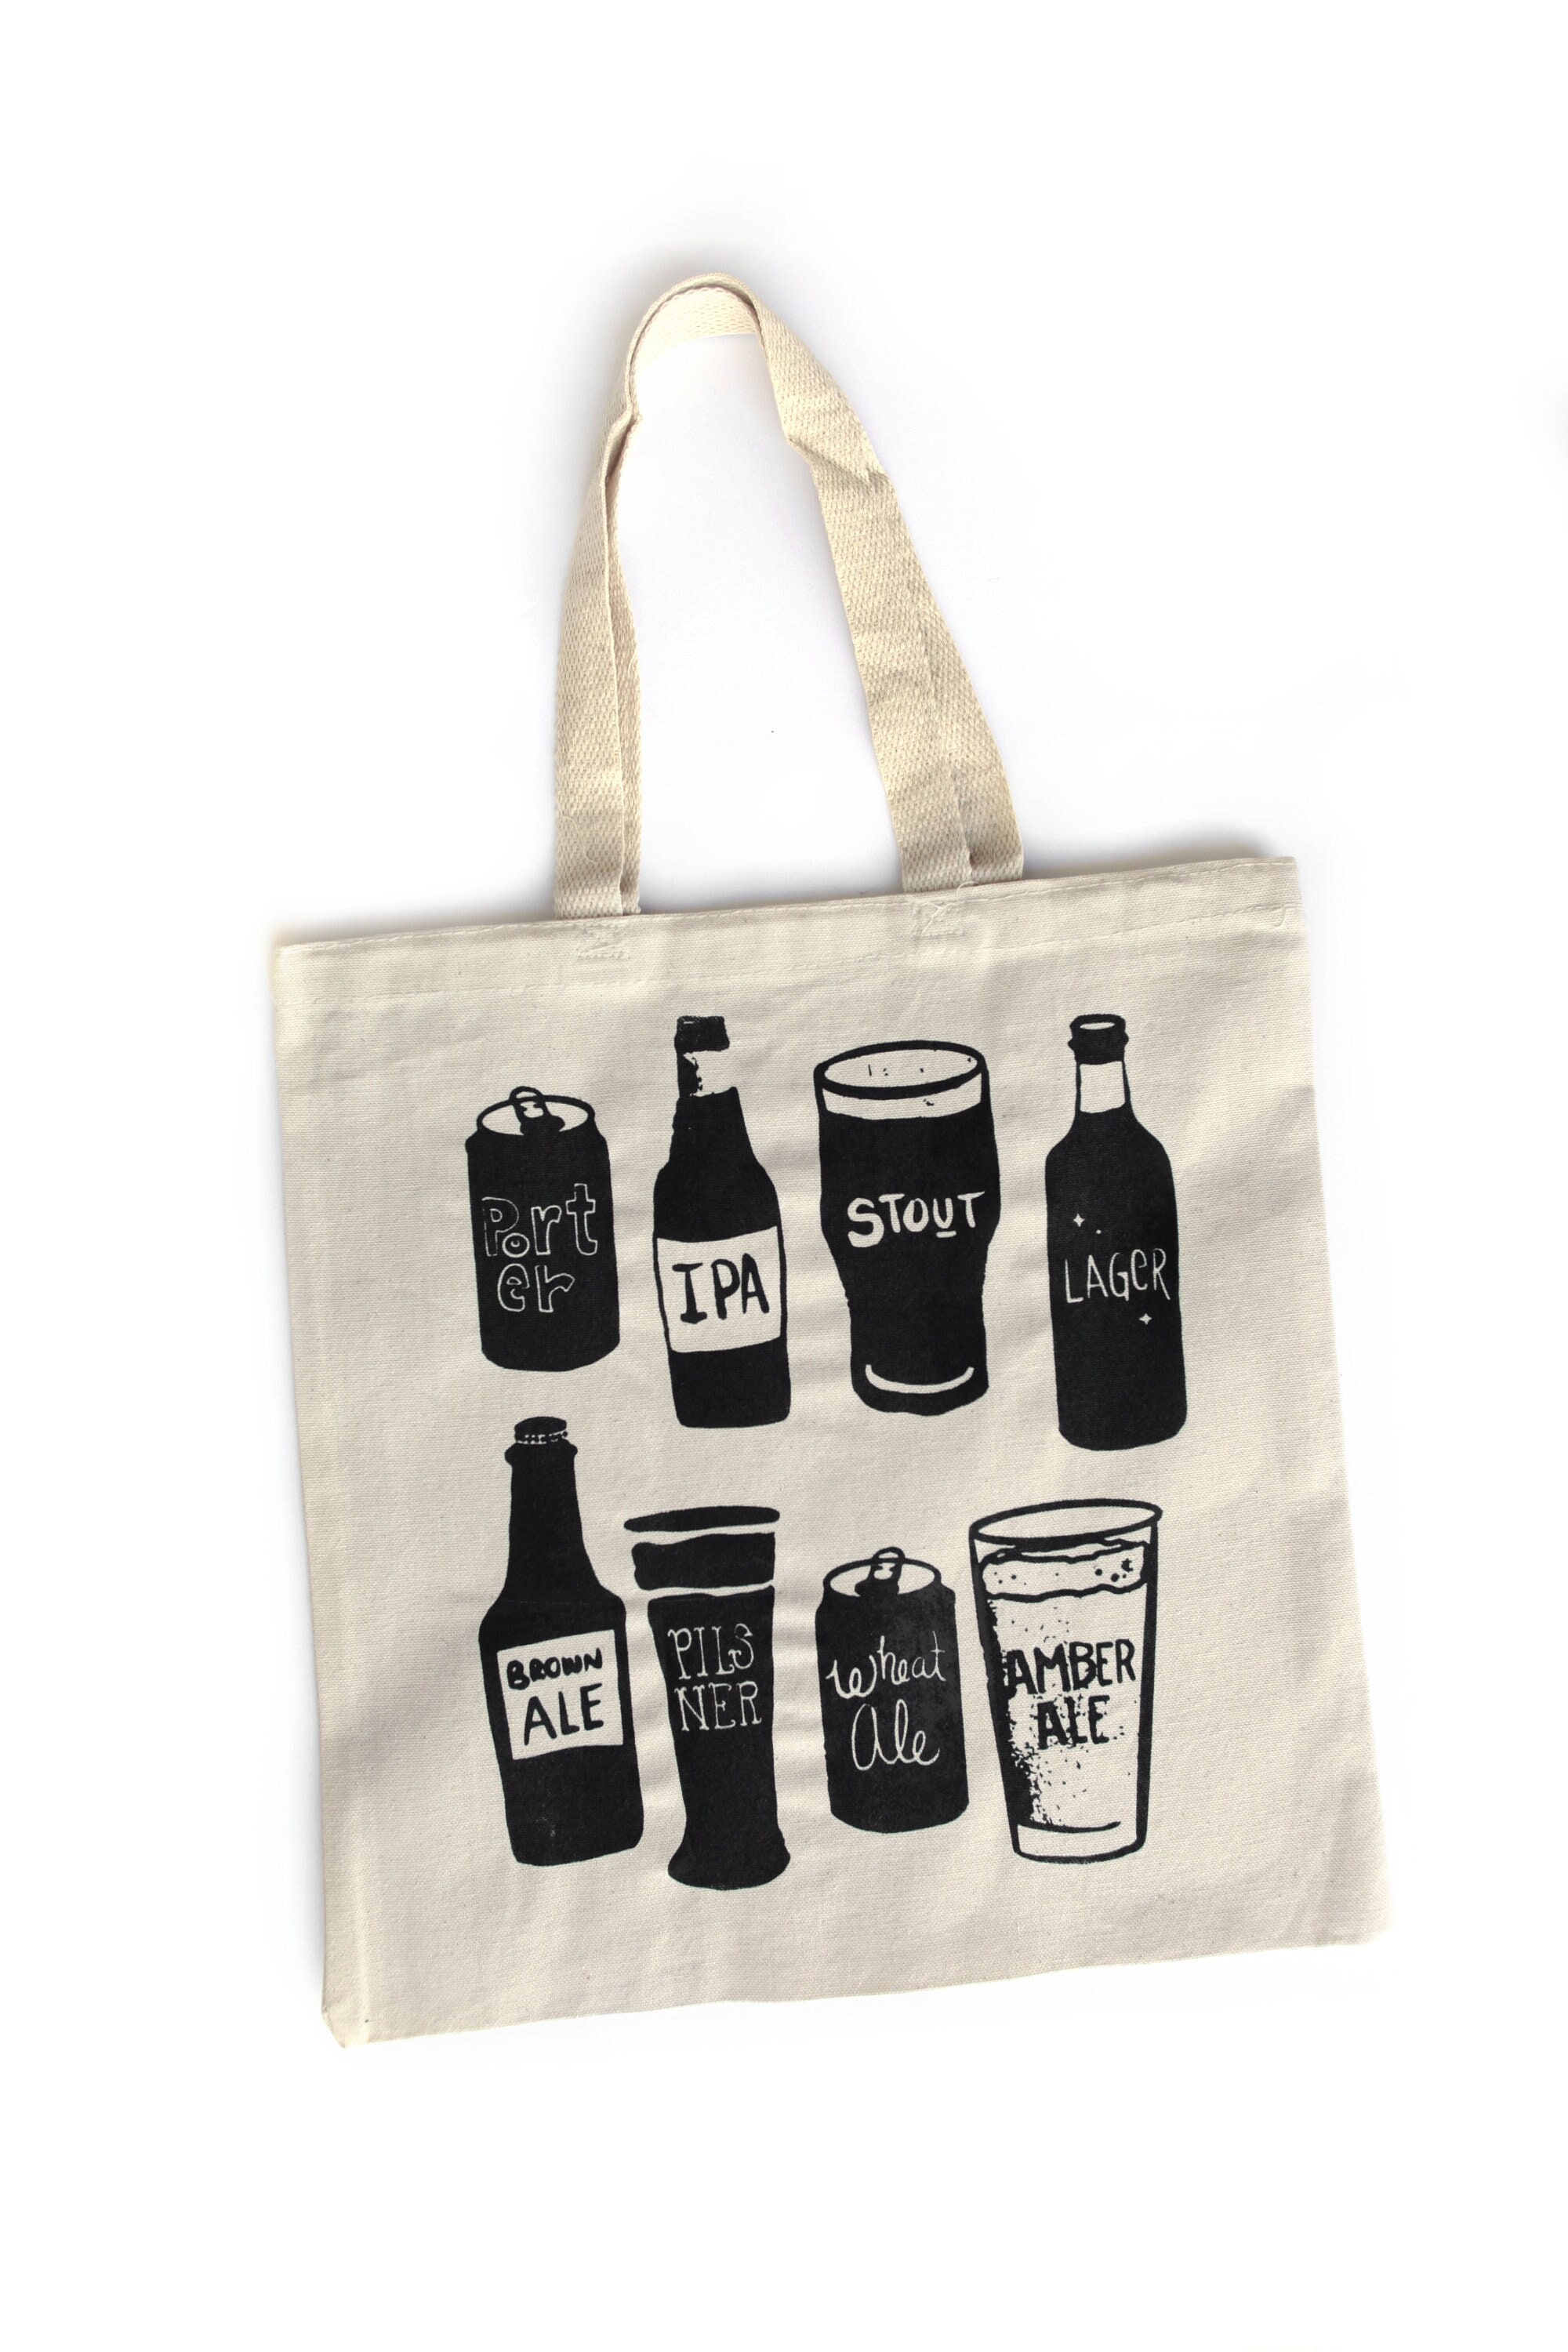 Landshark Premium Lager Beer 24 Pack can Cooler Bag - Shop Beer & Wine at  H-E-B